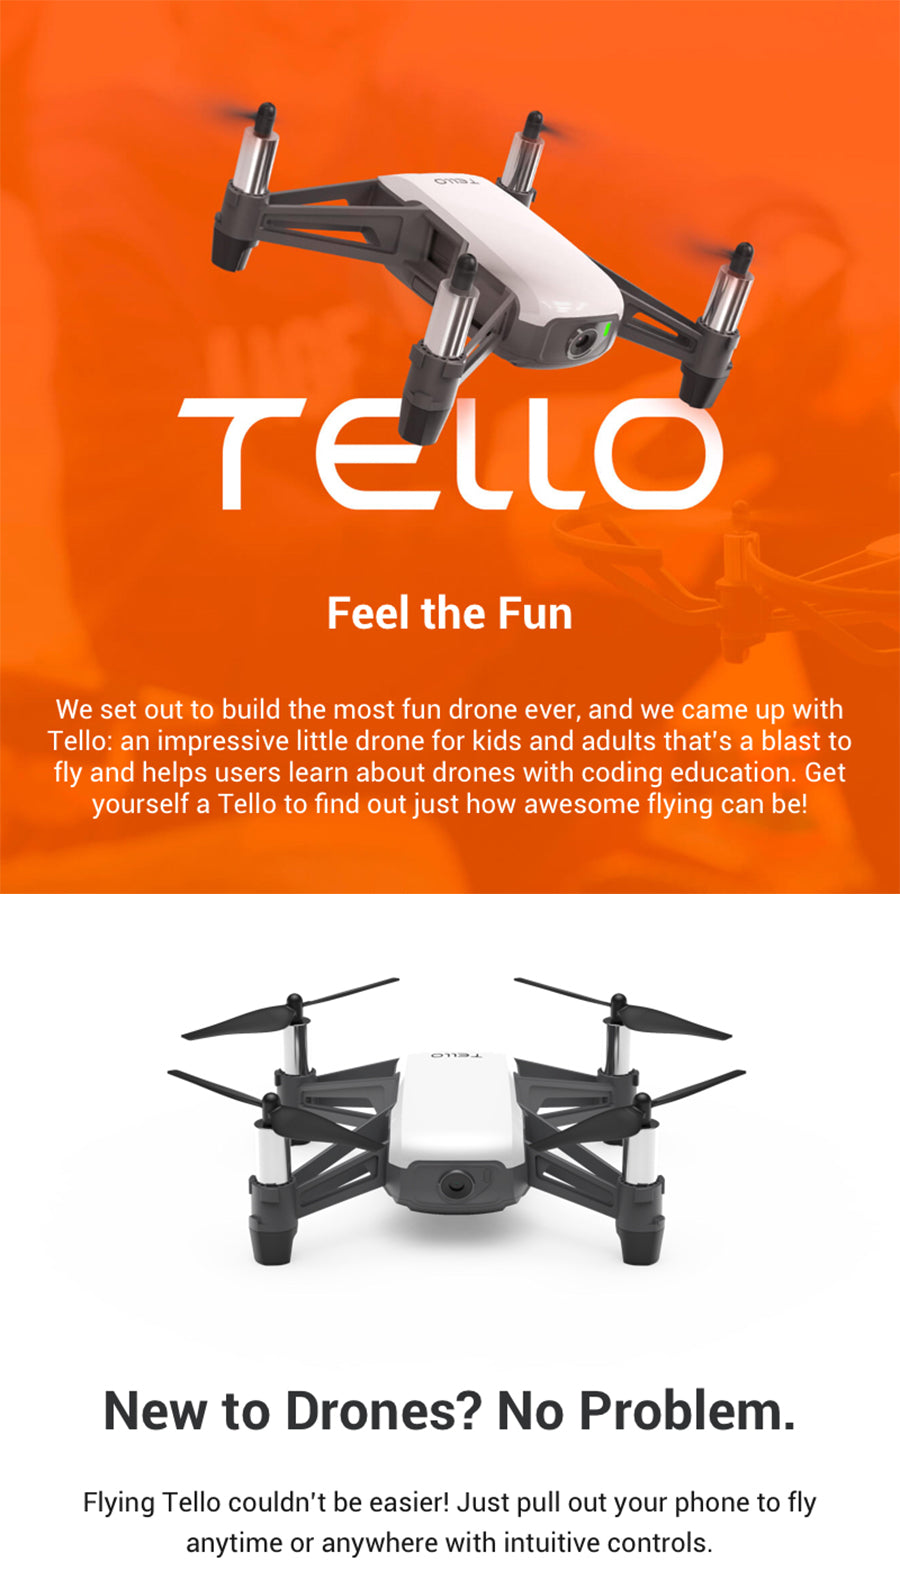 DJI Tello Mini Drone APP Remote Control FPV RC Quadcopter Drones 720P HD Transmission Camera with EZ Shots - astore.in